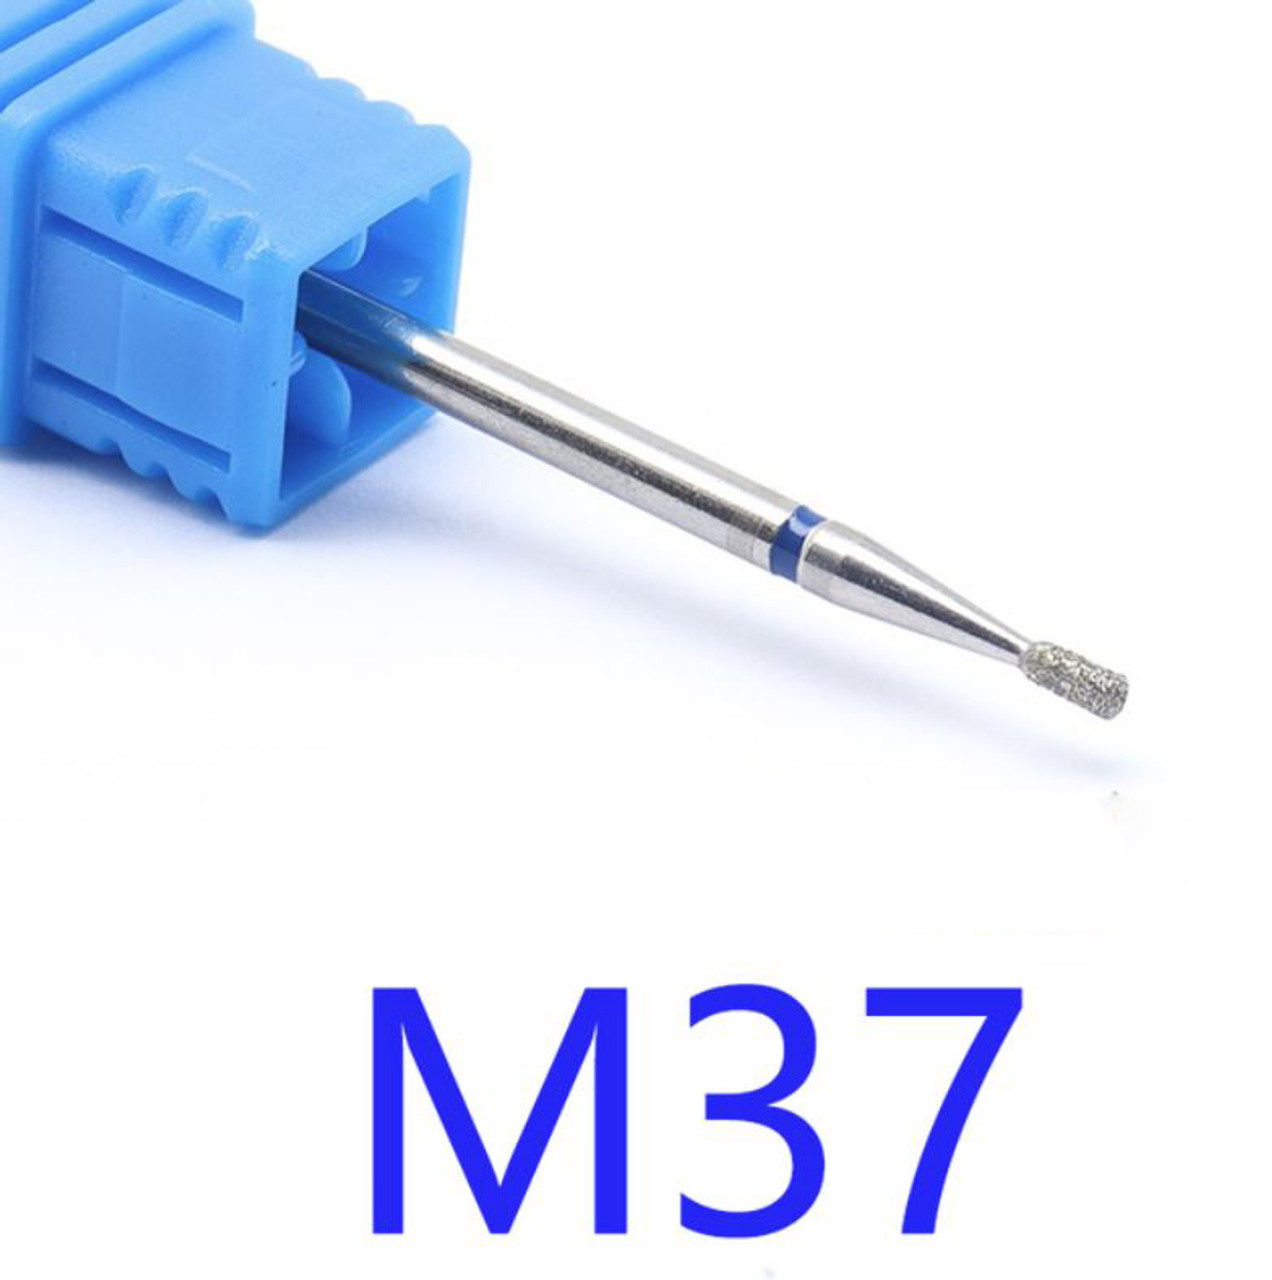 NDi beauty Diamond Drill Bit - 3/32 shank (MEDIUM) - M37